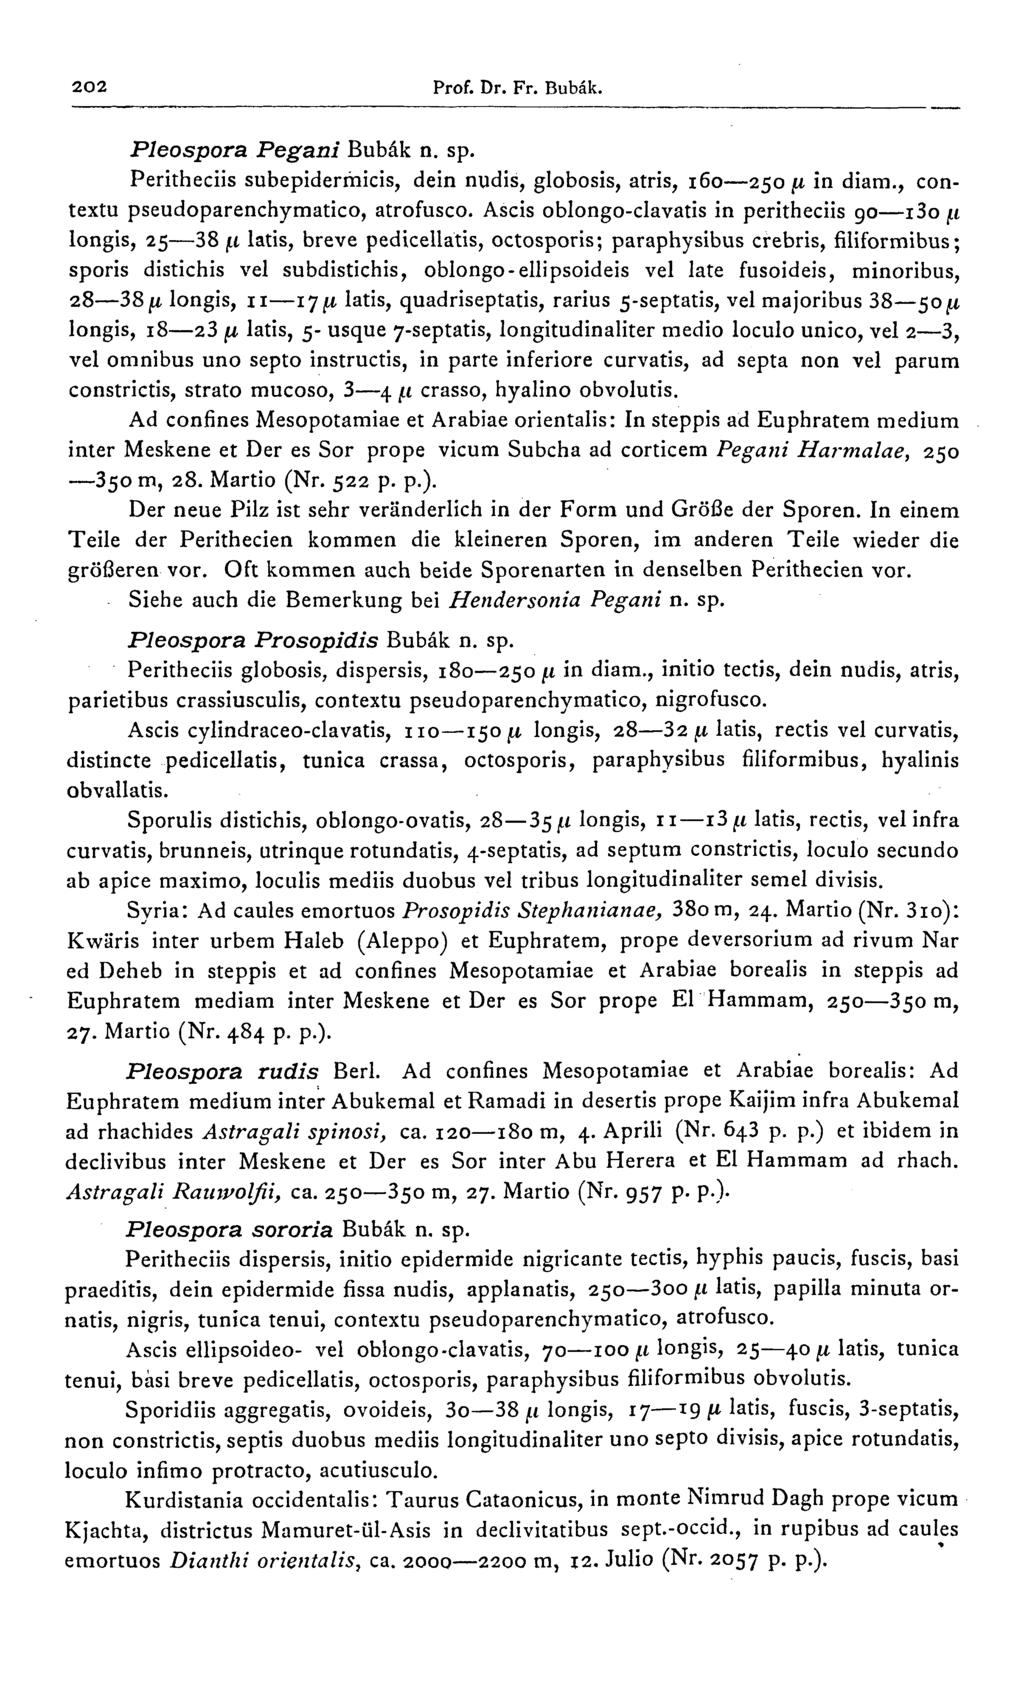 2O2 Prof. Dr. Fr. Bubâk. Pleospora Pegani Bubâk n. sp. Peritheciis subepiderrhicis, dein nudis, globosis, atris, 160 250 fi in diam., contextu pseudoparenchymatico, atrofusco.